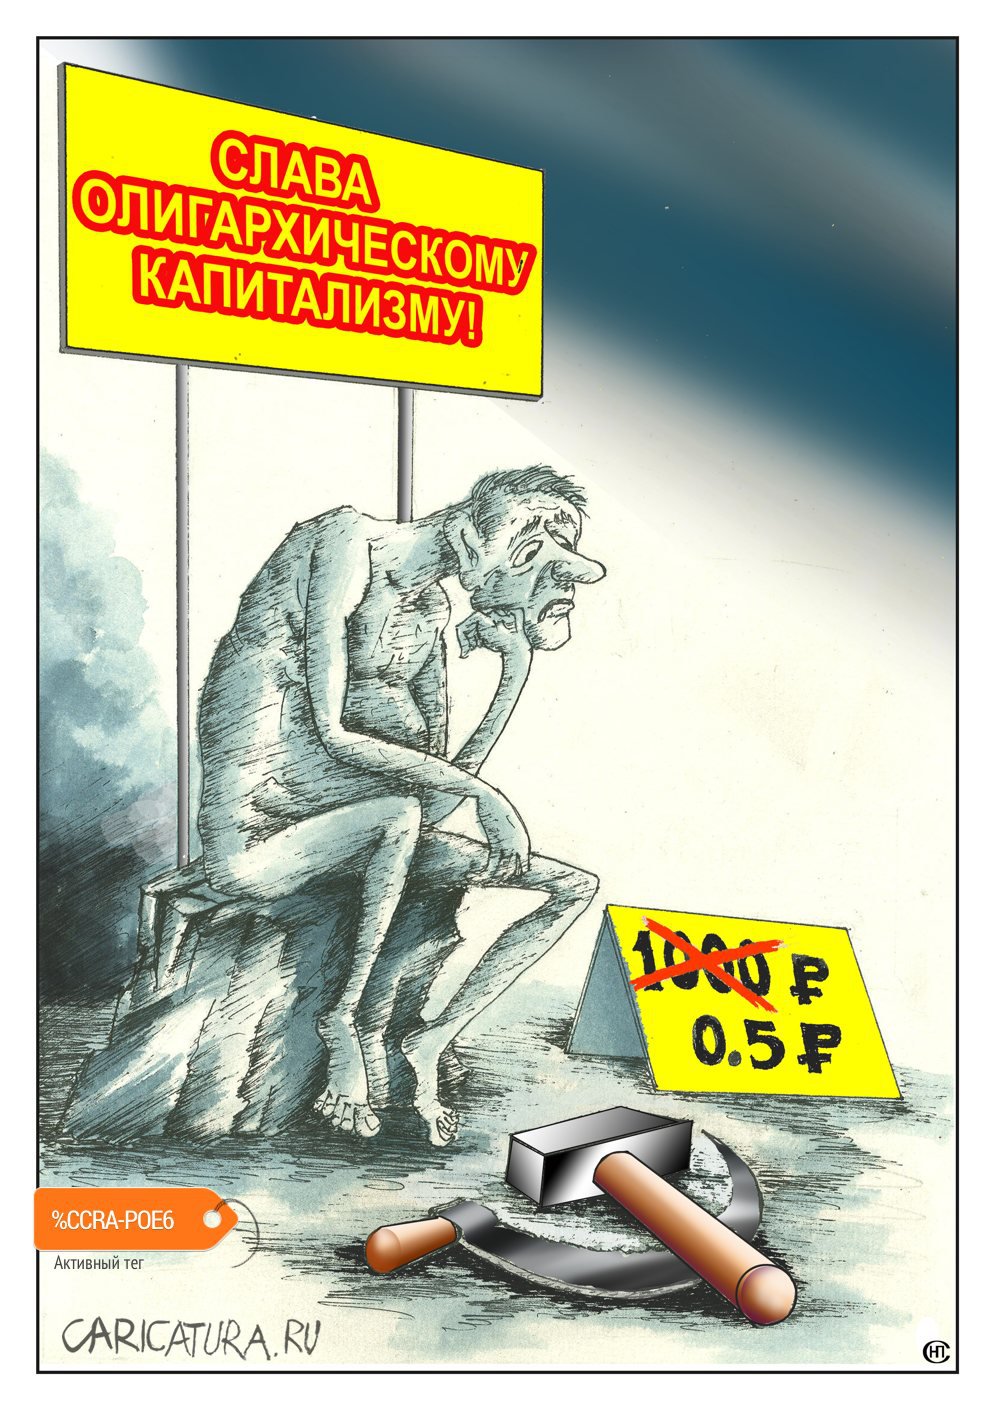 Карикатура "Вечный кризис", Николай Свириденко